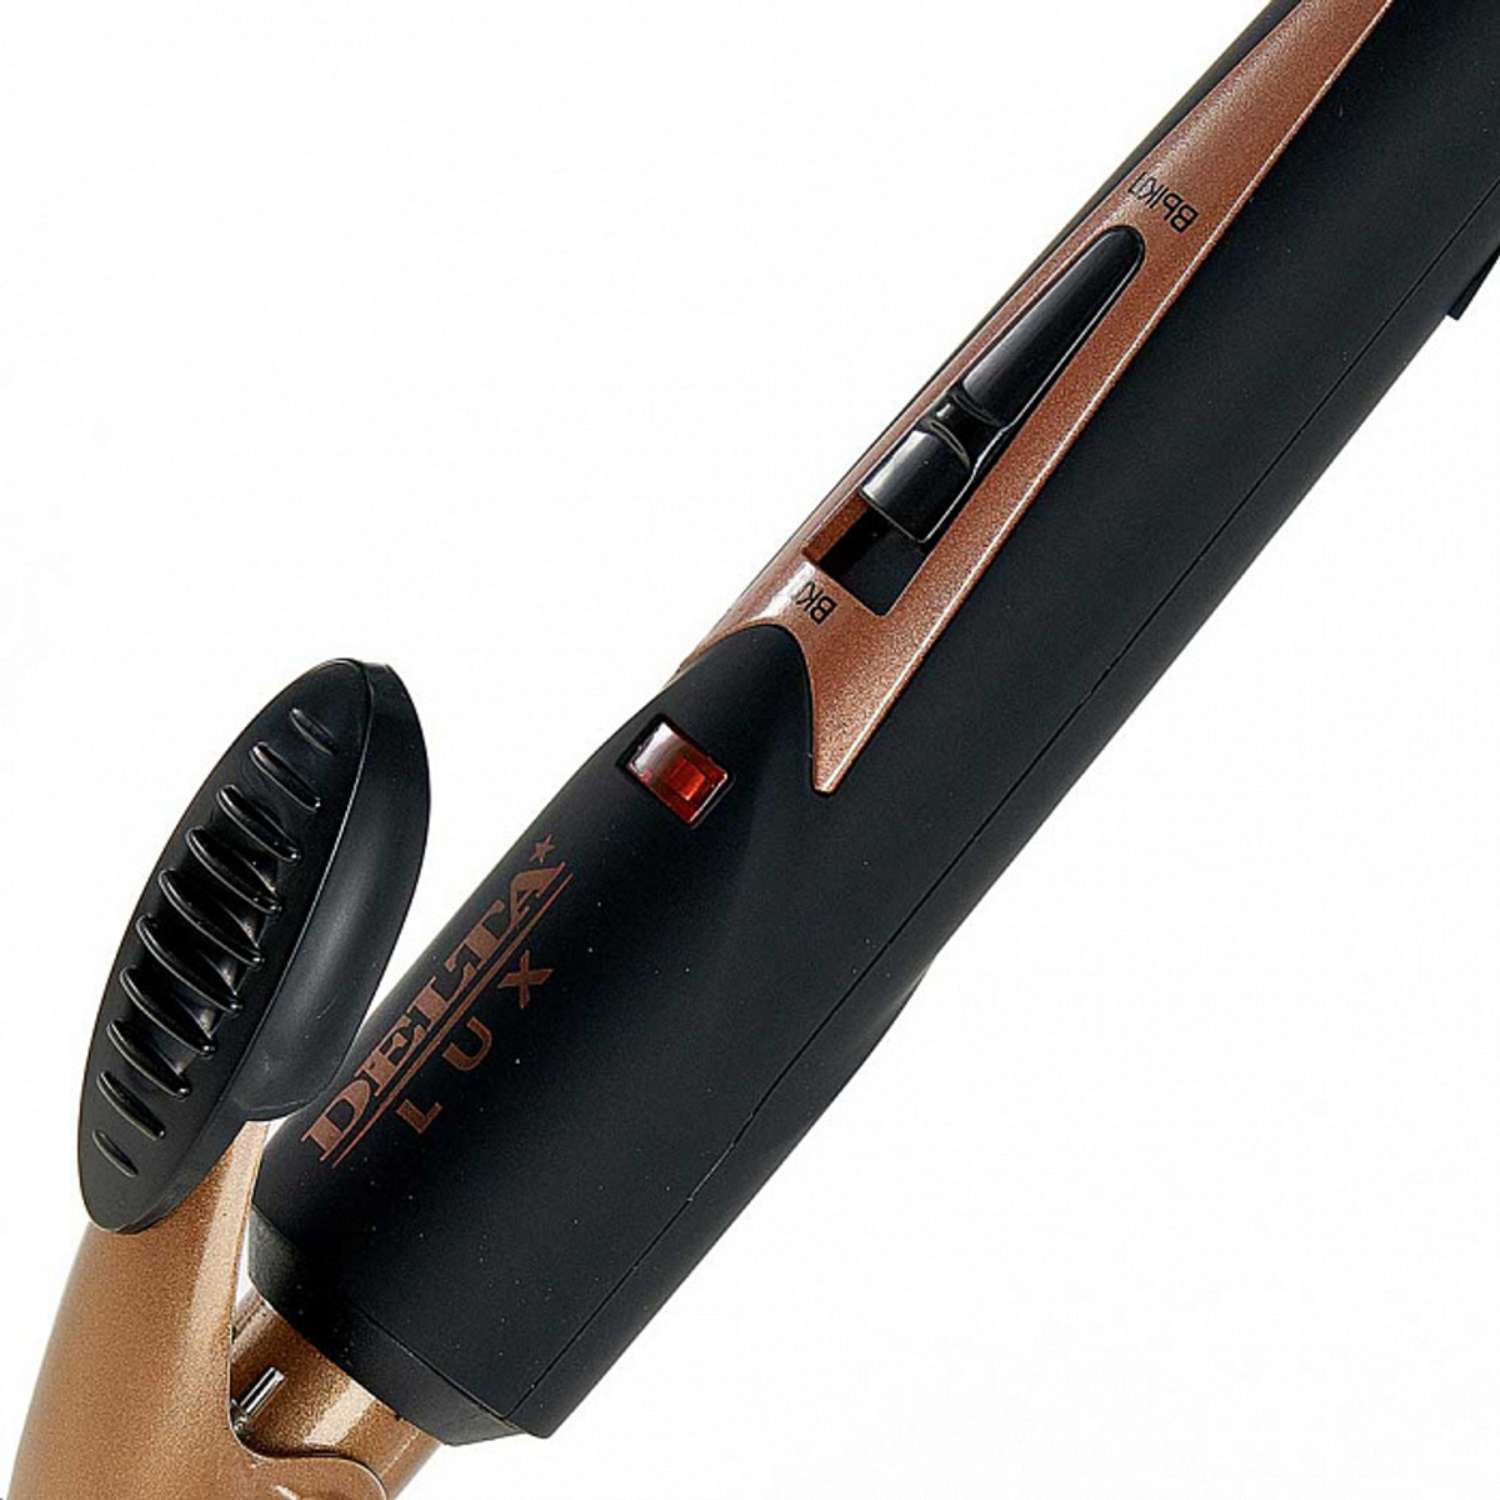 Стайлер для завивки волос Delta Lux DL-0630 черный с бронзовым керамическое покрытием d 19 мм 25 Вт - фото 3